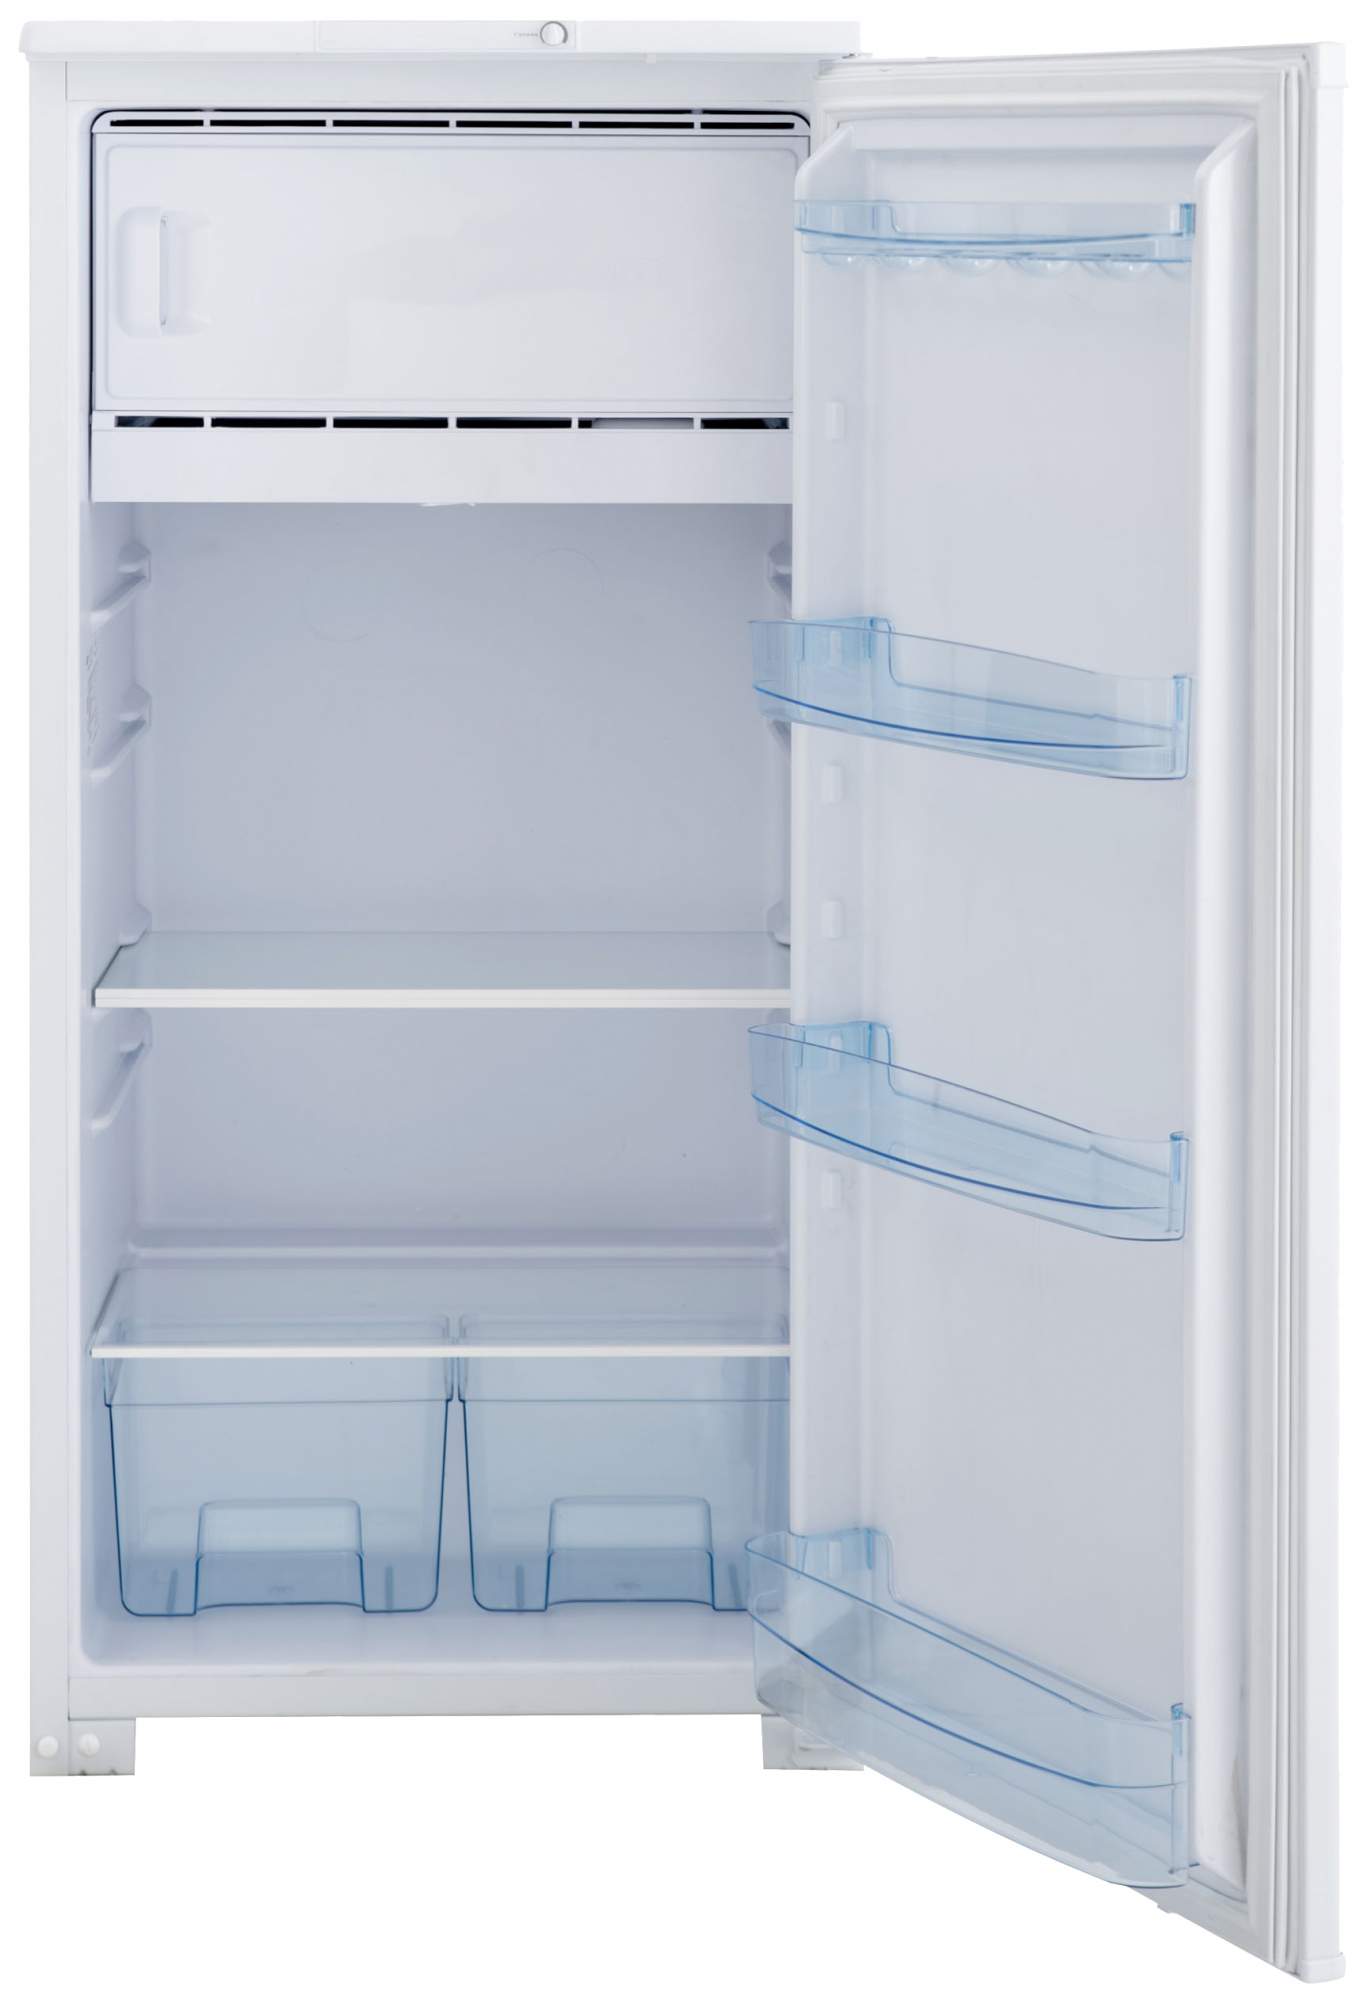 Купить Холодильник В Перми Недорого